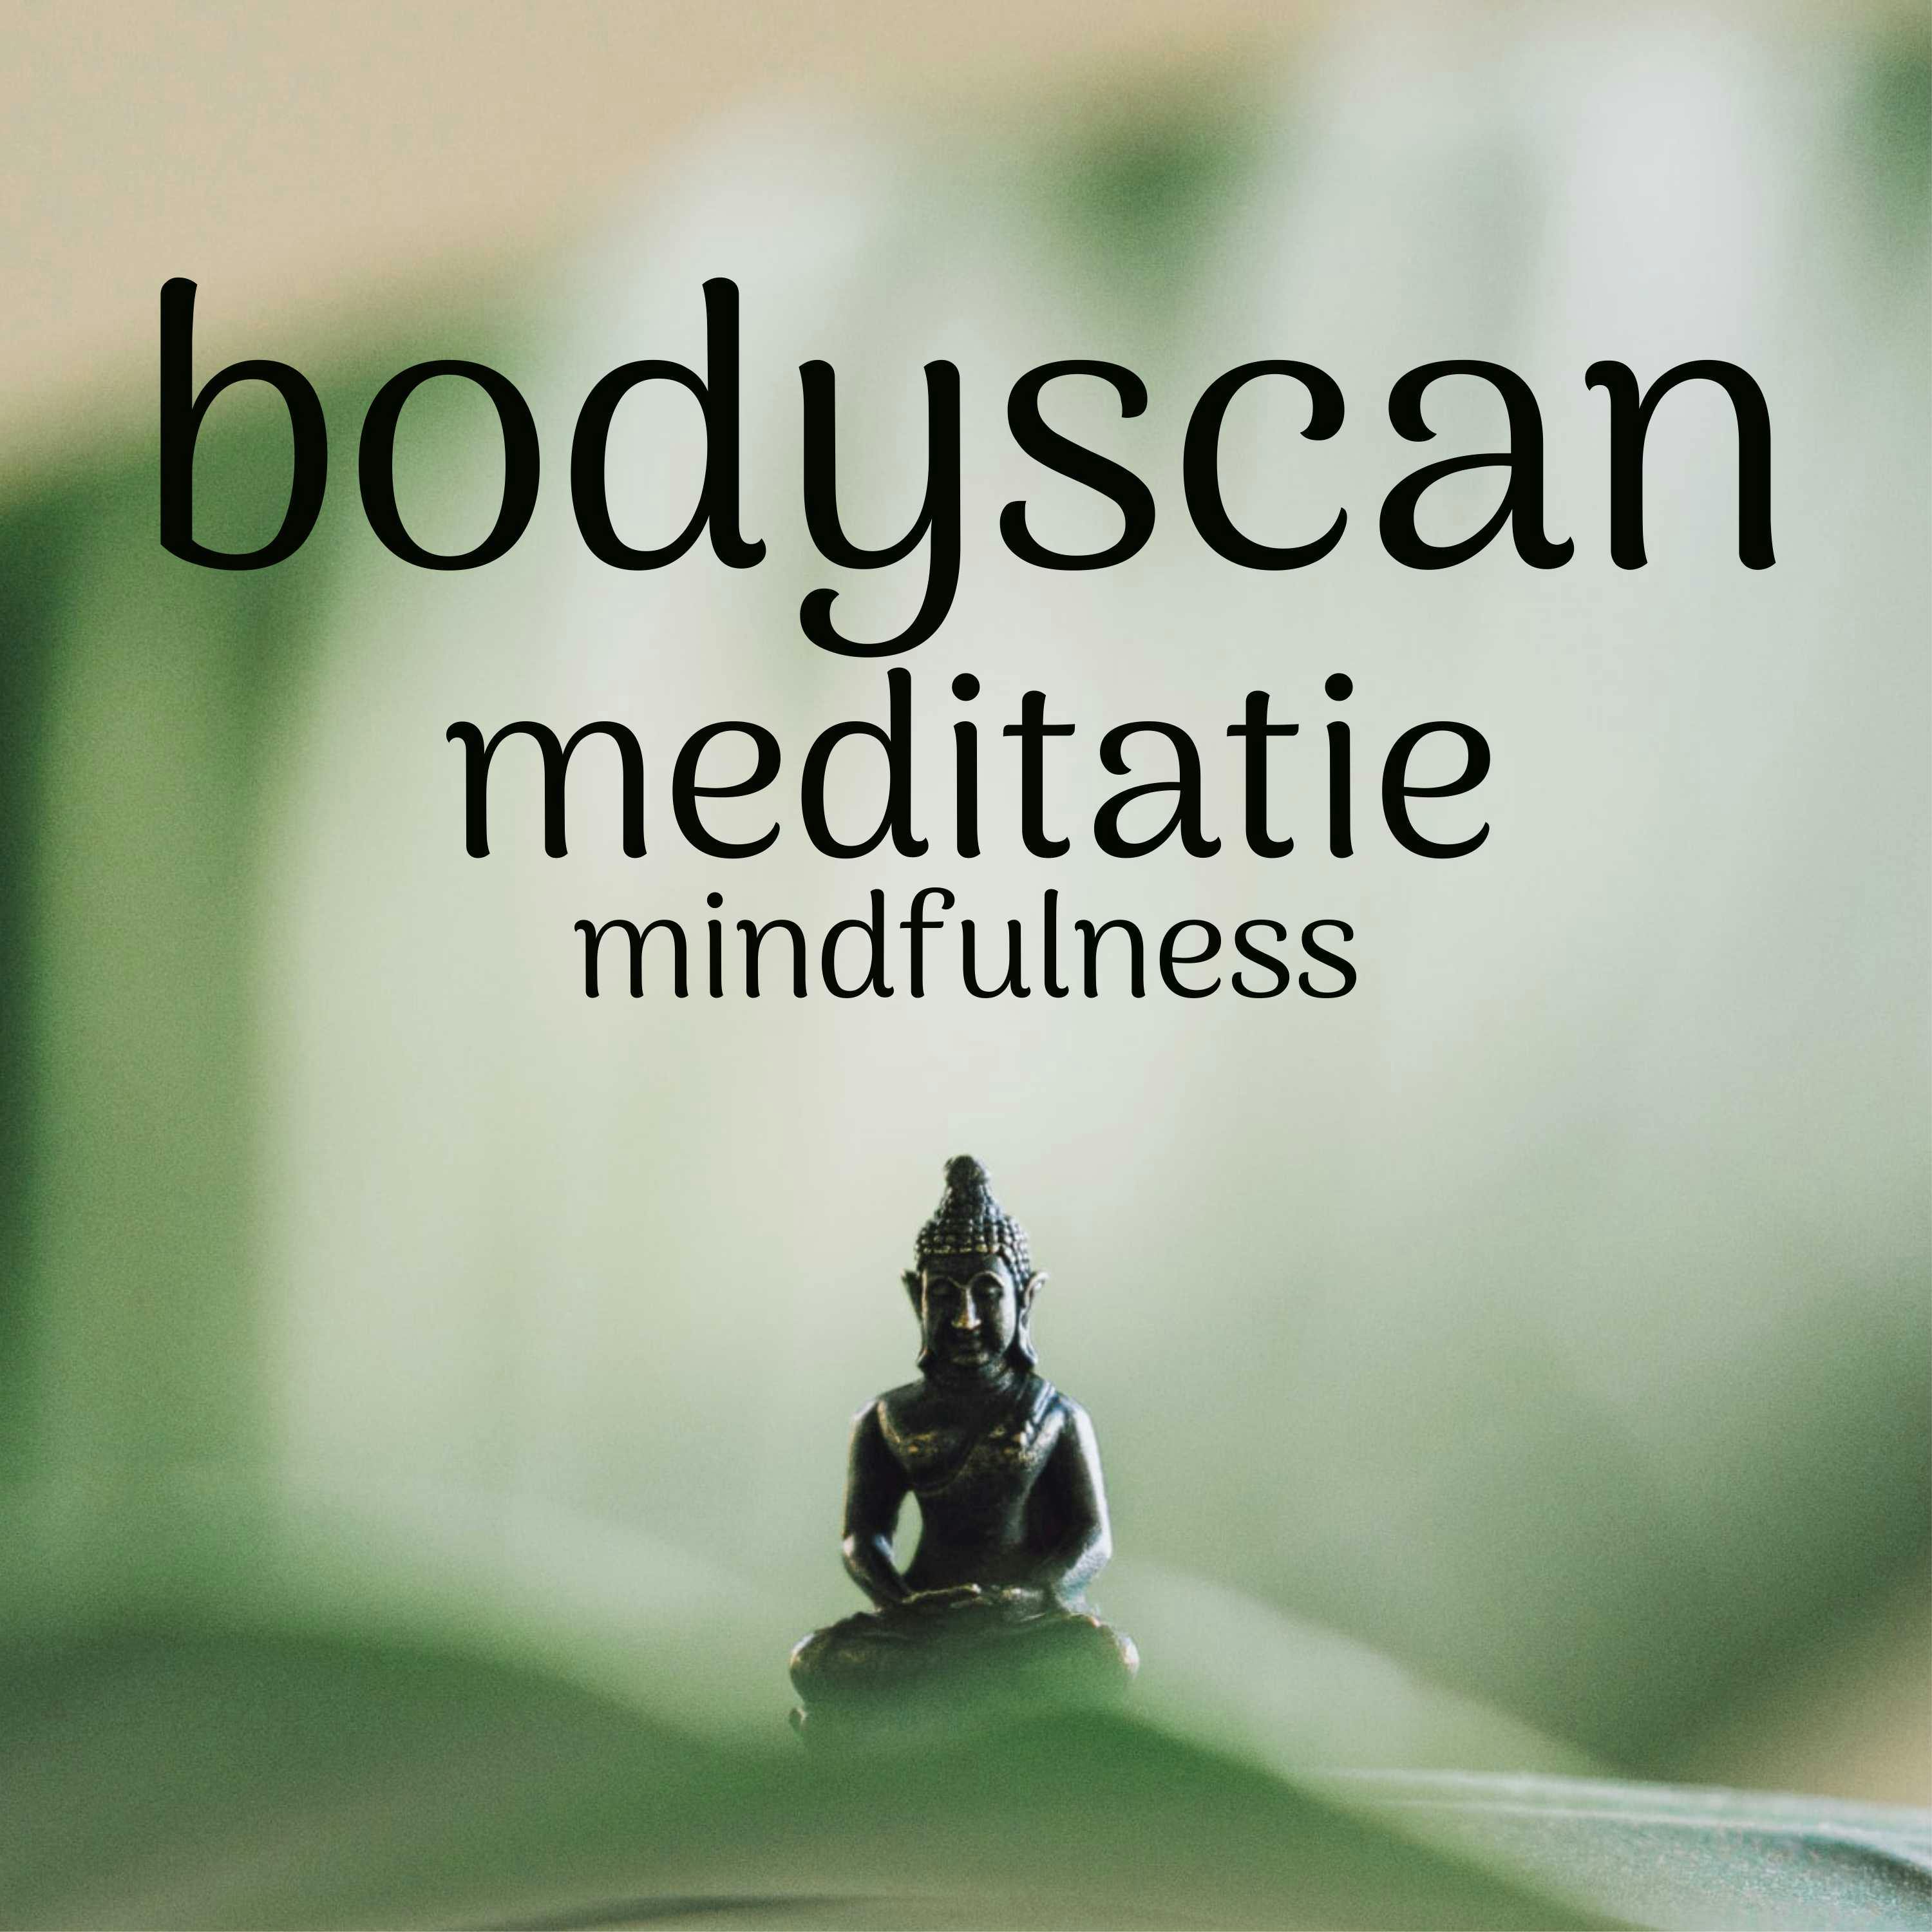 Bodyscan Meditatie Mindfulness - undefined